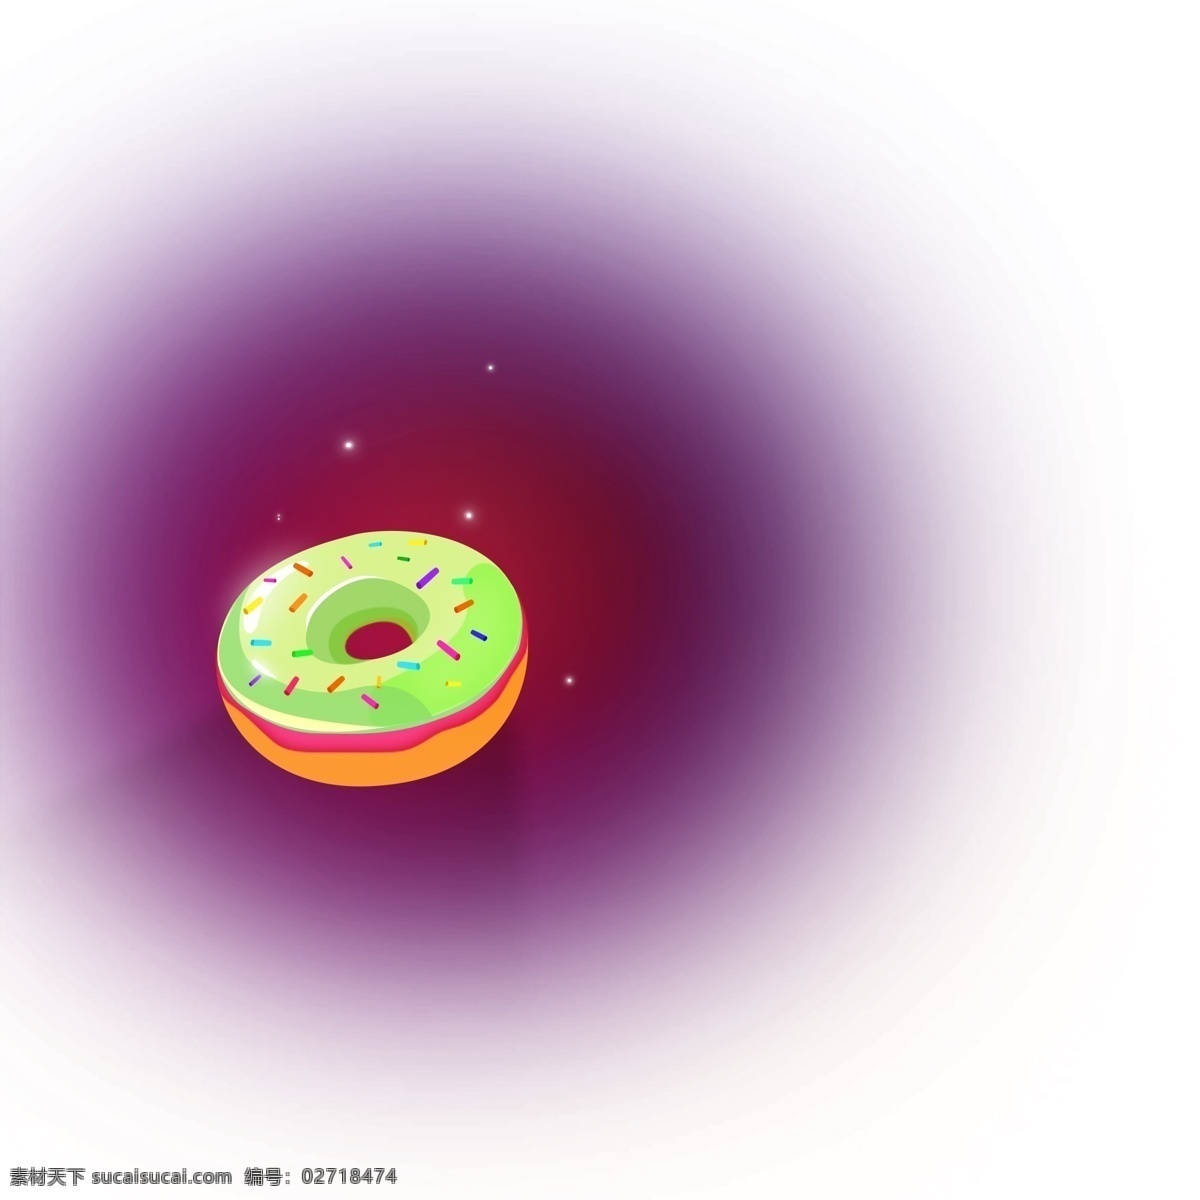 绿色 甜甜 圈 免 抠 图 甜甜圈 美食 早餐早点 美味甜甜圈 ui应用图标 电脑图标 小图标 美食图标